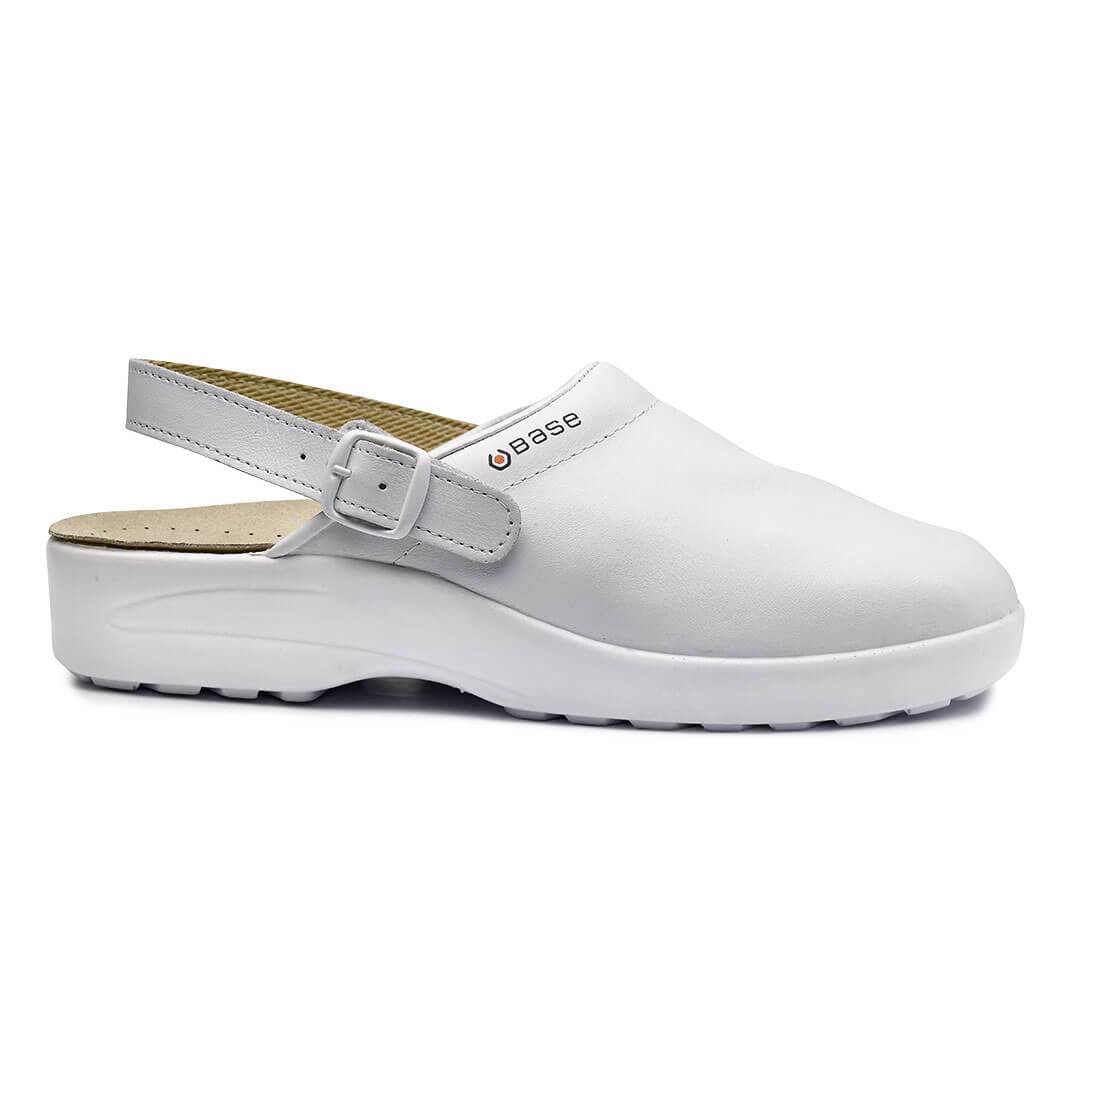 Base Radon Toe Cap Work Safety Sandals White 1#colour_white